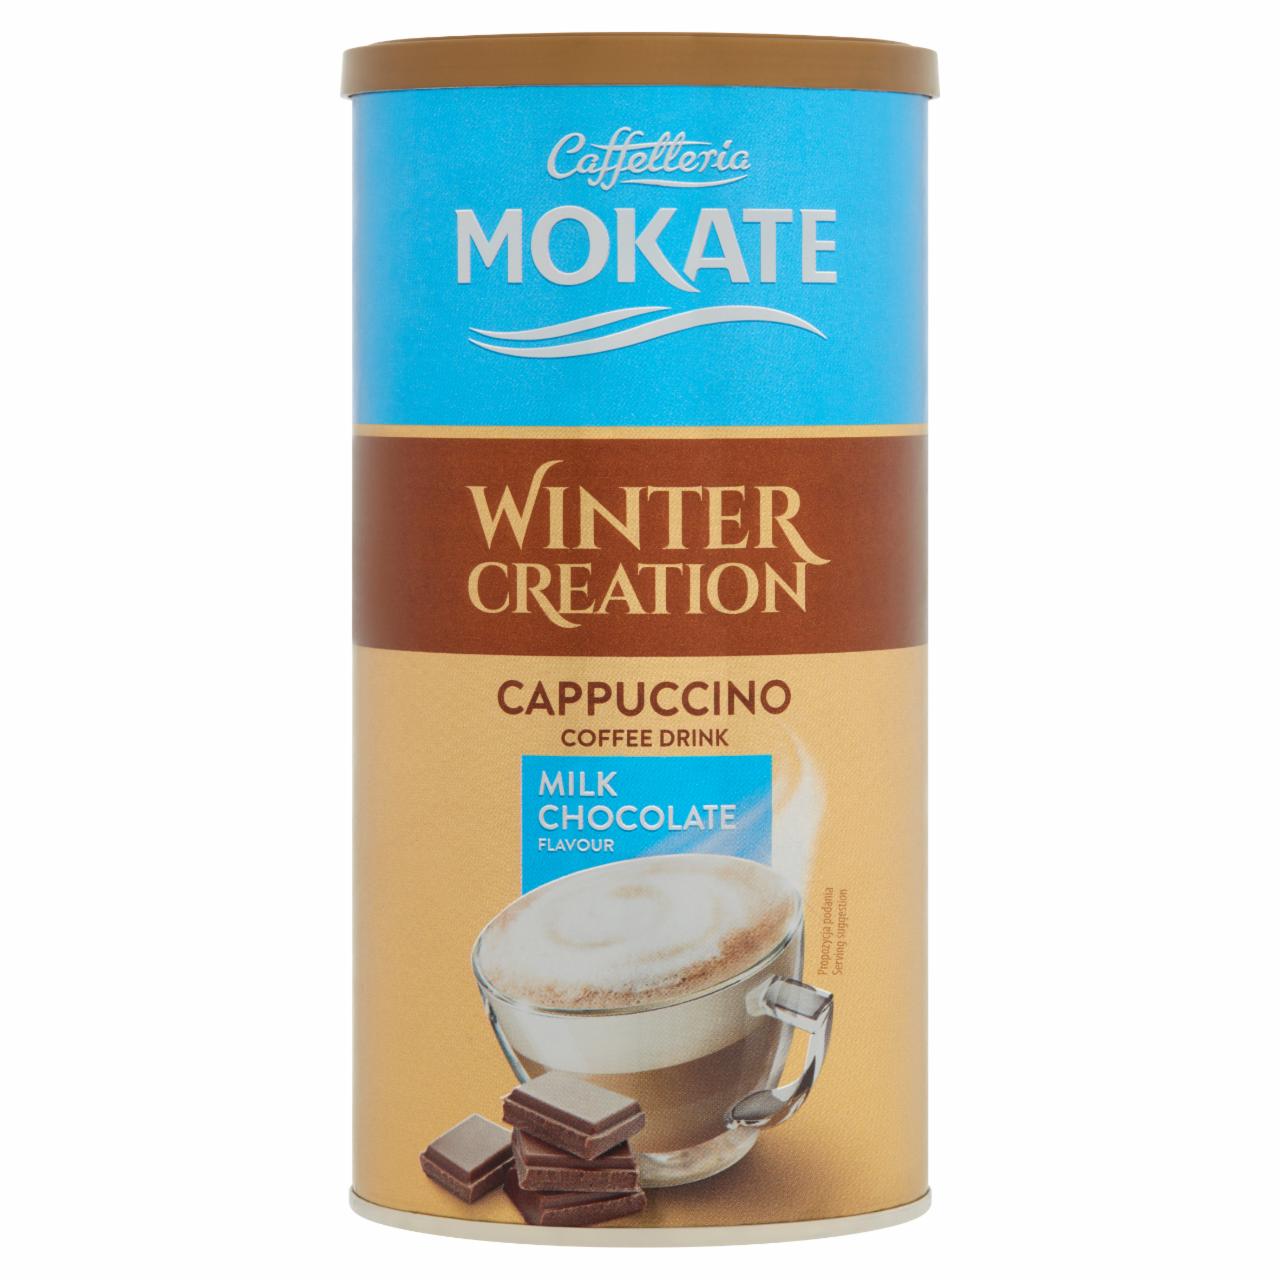 Képek - Mokate Winter Creation Cappuccino tejcsokoládé ízű kávéitalpor 150 g